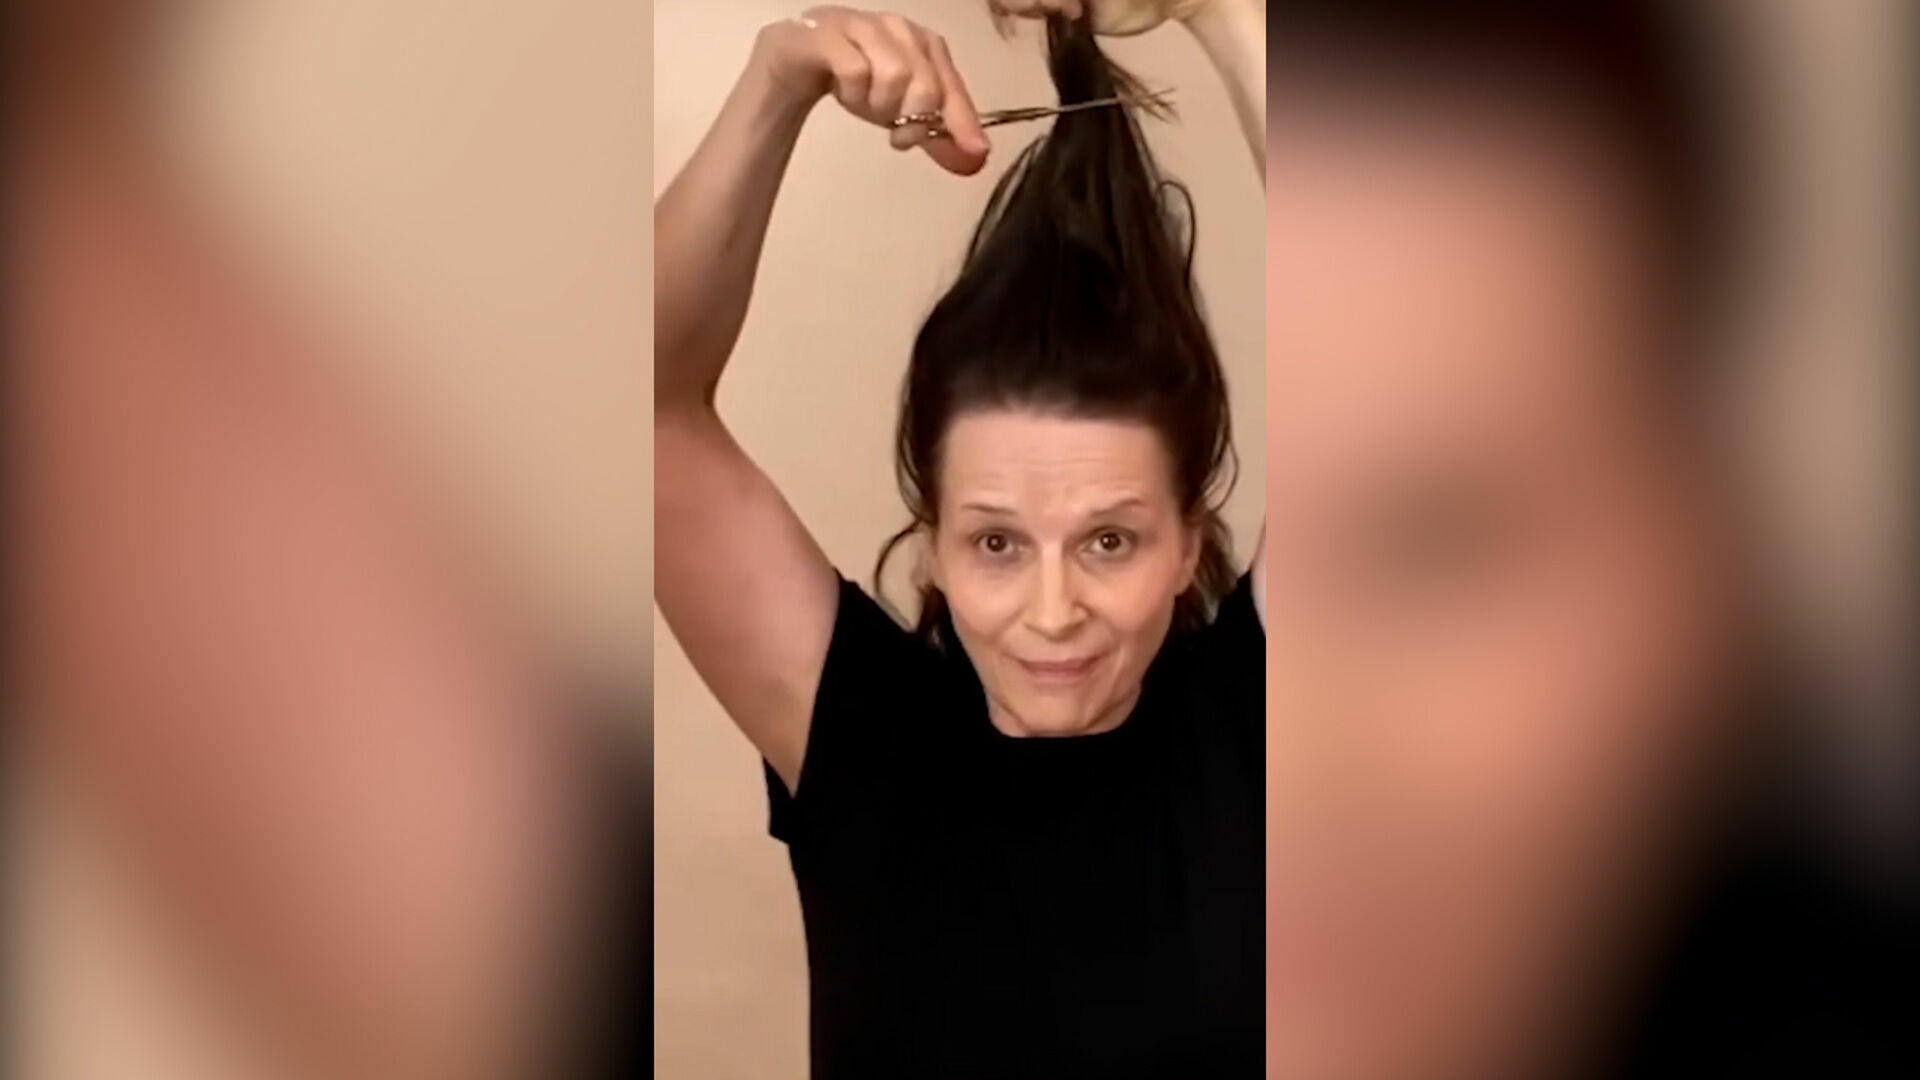 Juliette Binoche cut her hair in support of the rebellious women in Iran